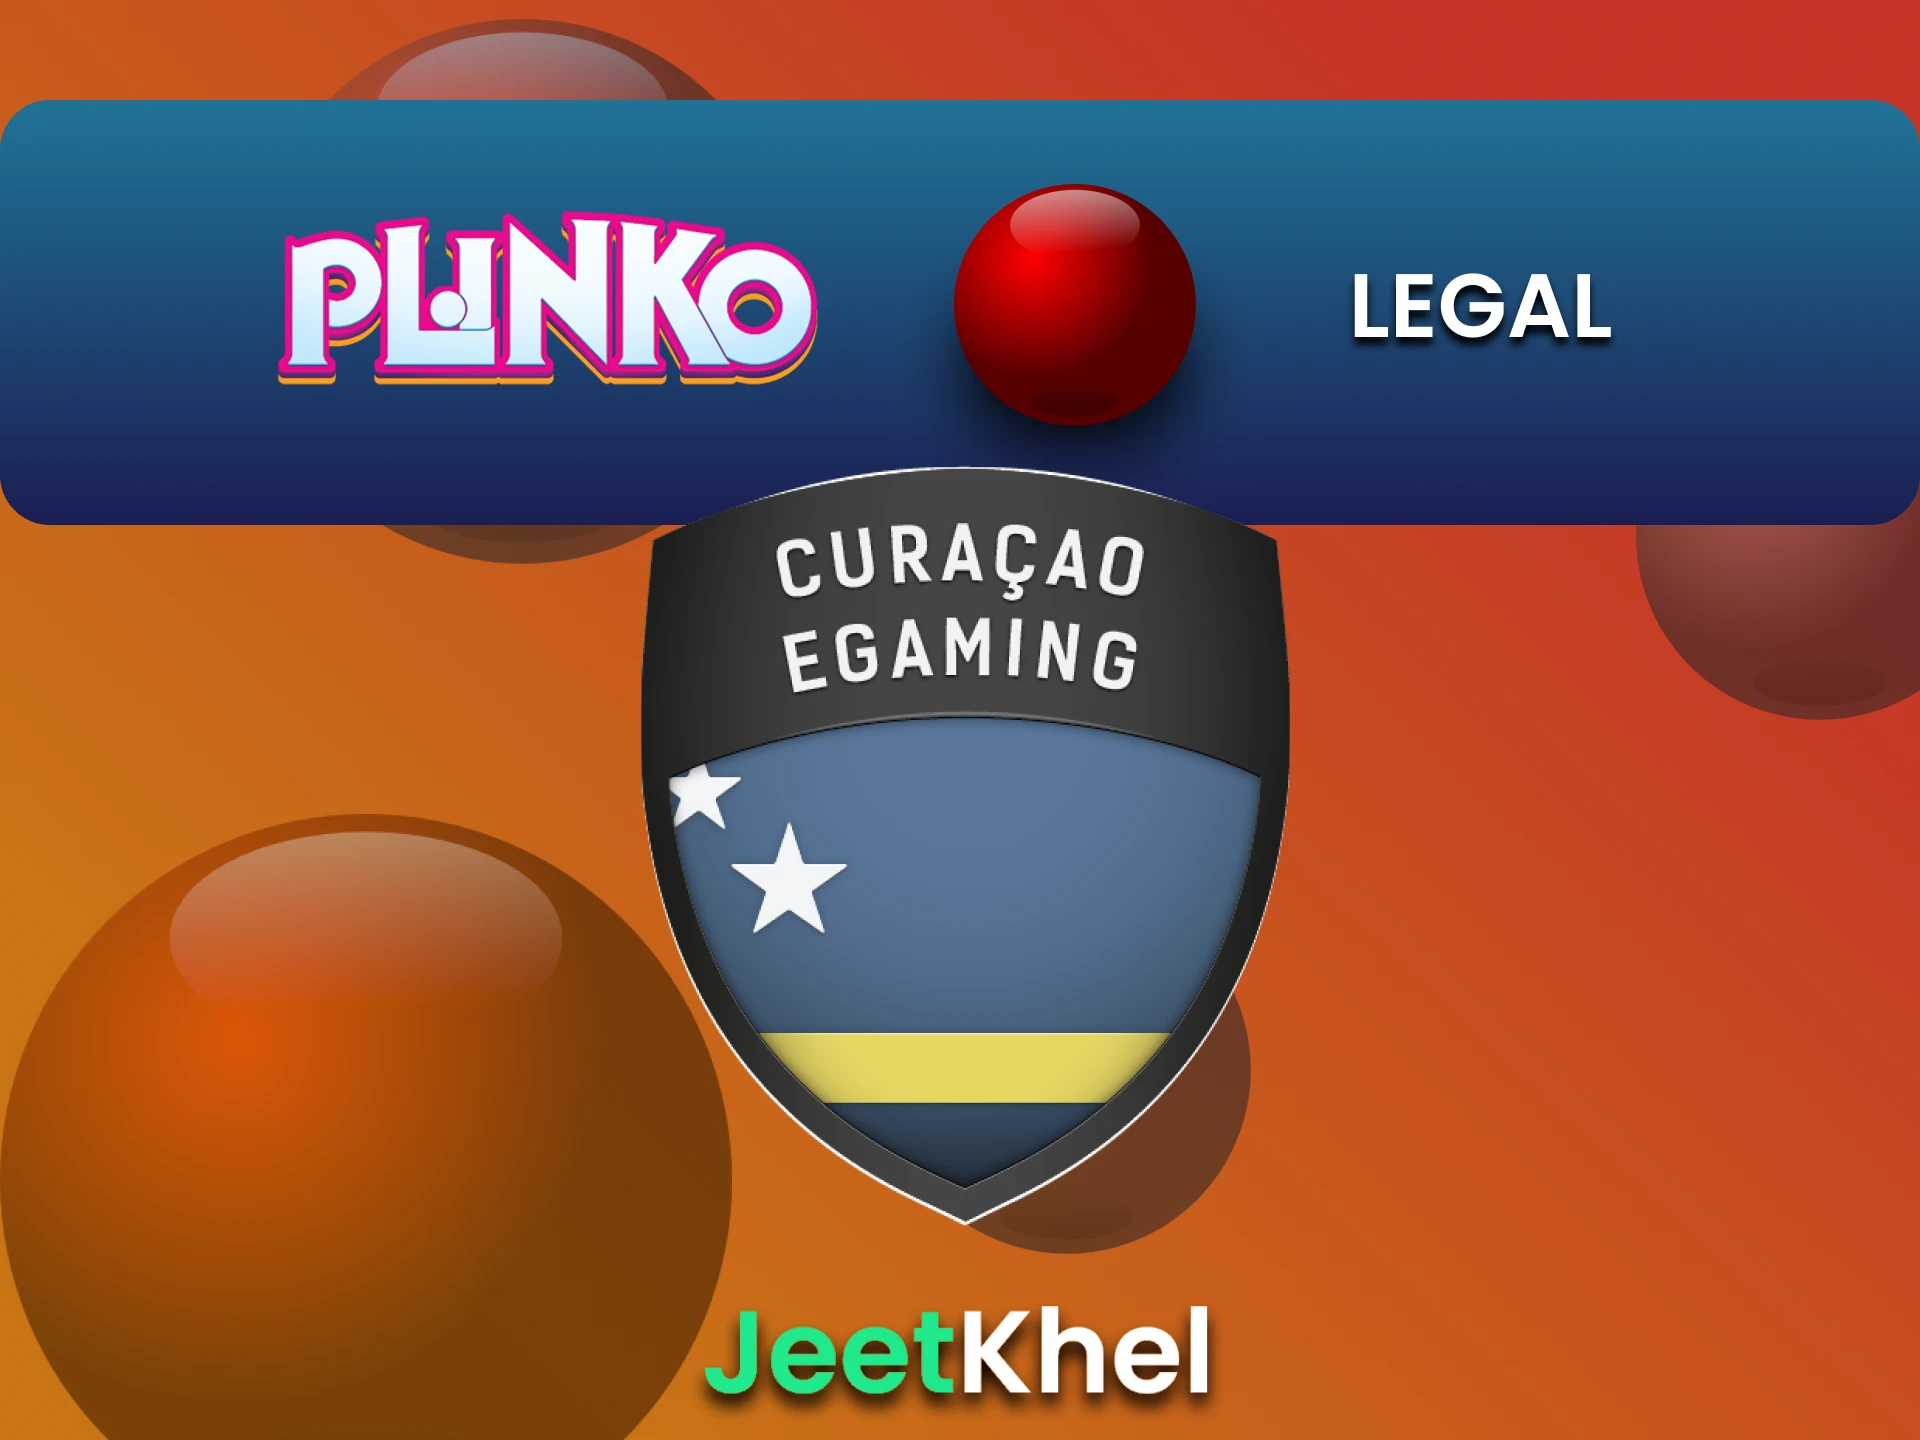 JeetKhel is licensed to play Plinko.